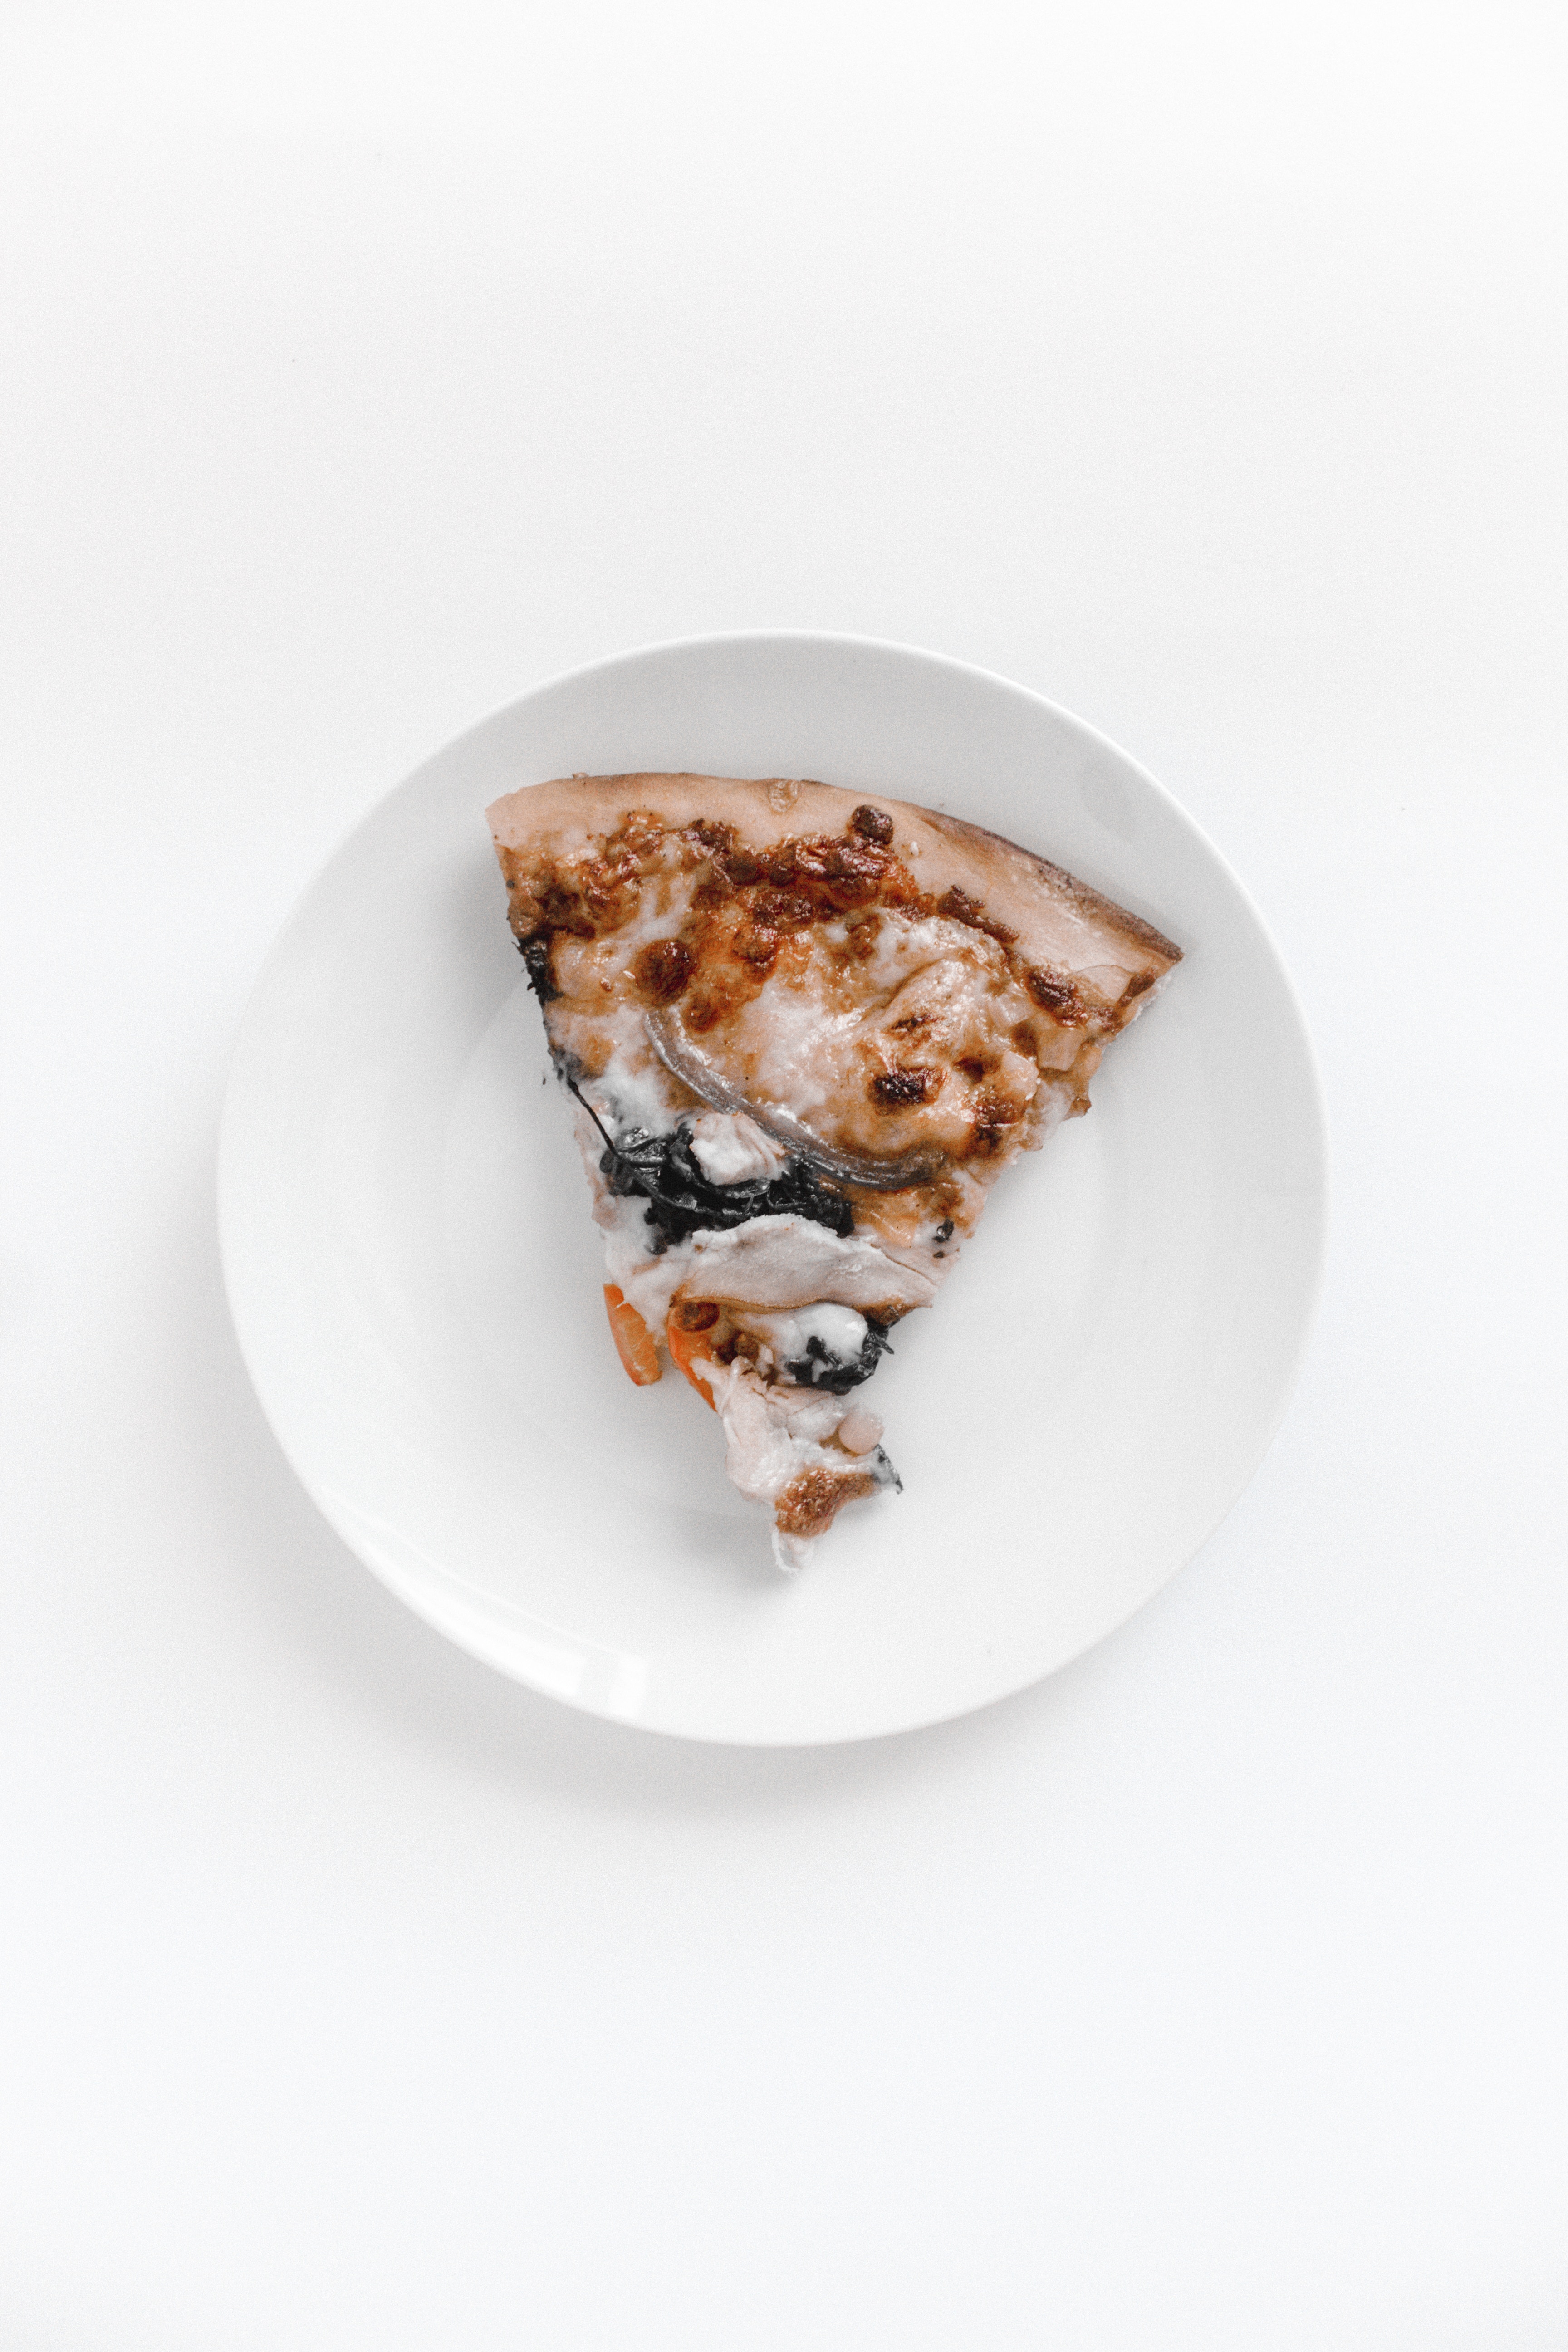 デリバリーピザは高い 安い ピザにまつわるコストを徹底解説 ピザのちから